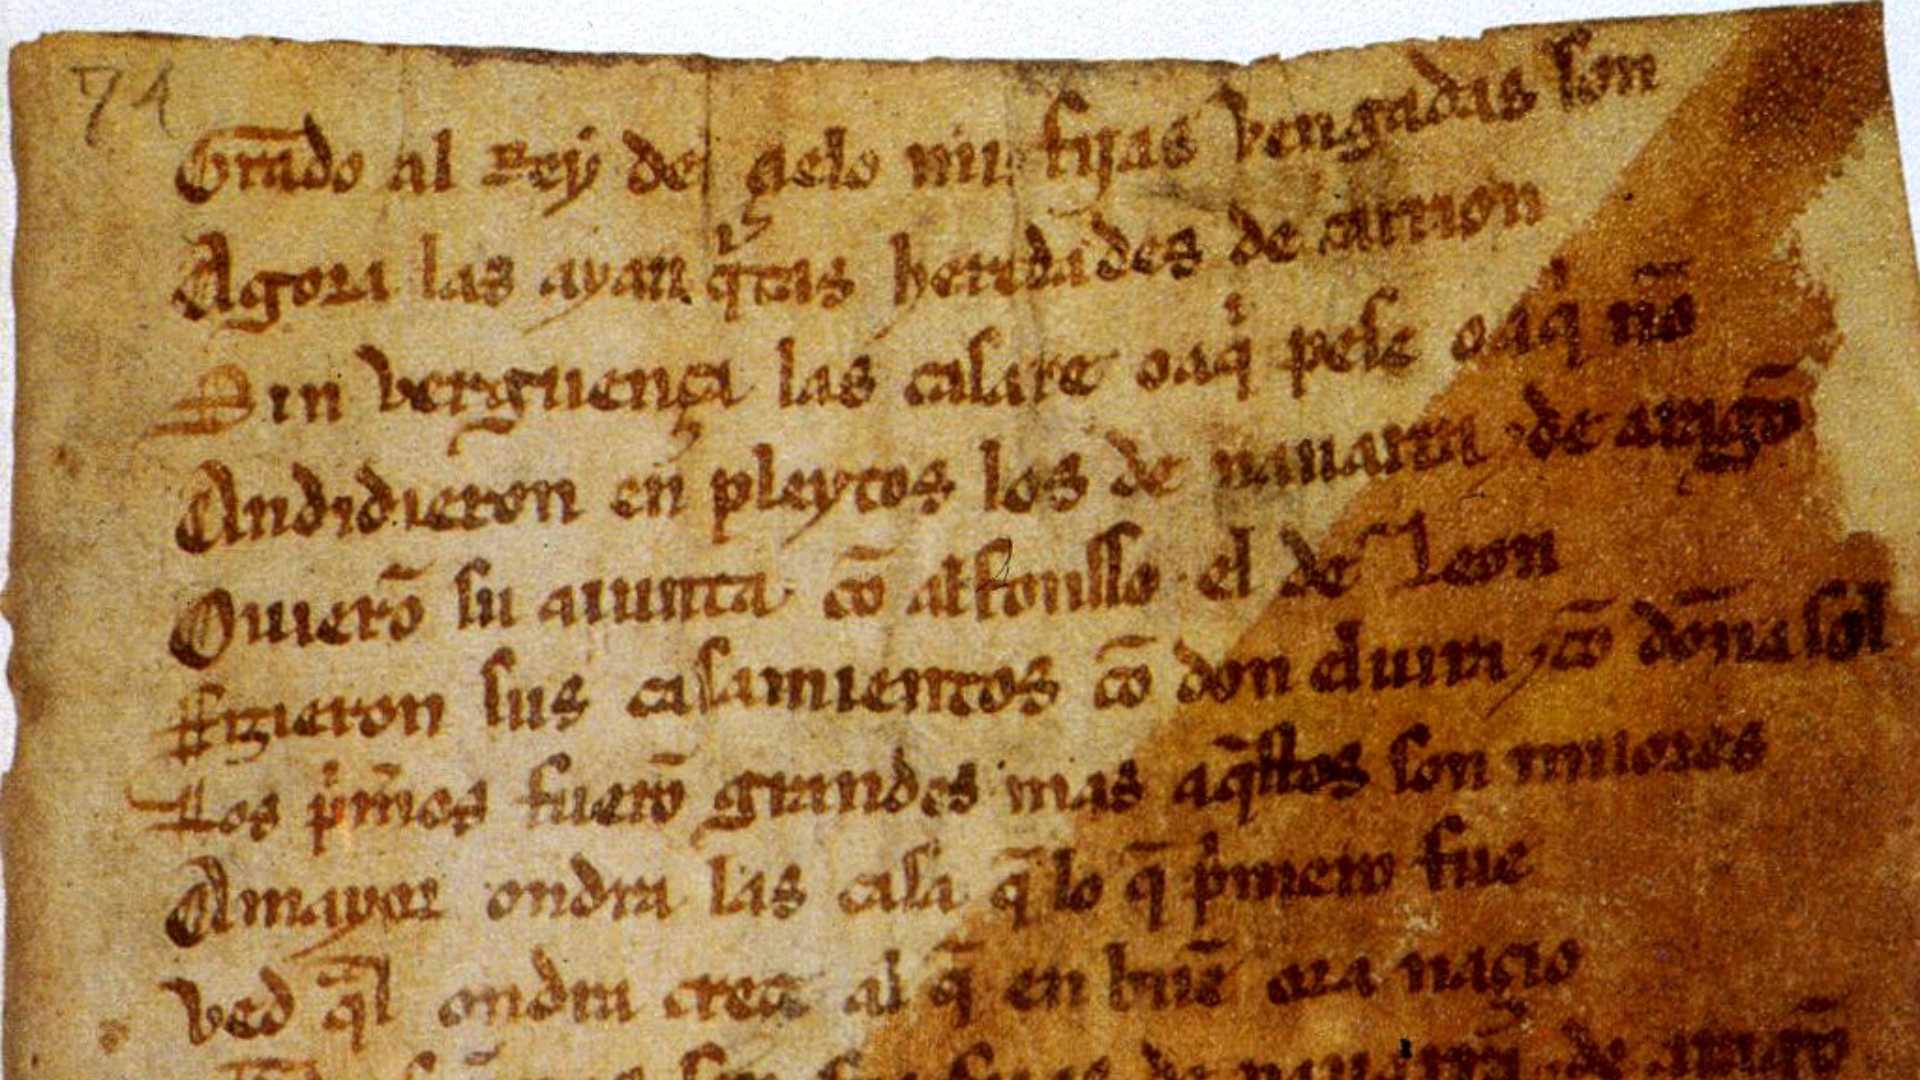 La Biblioteca Nacional exhibe la joya de la corona: el códice único del Cantar de Mío Cid